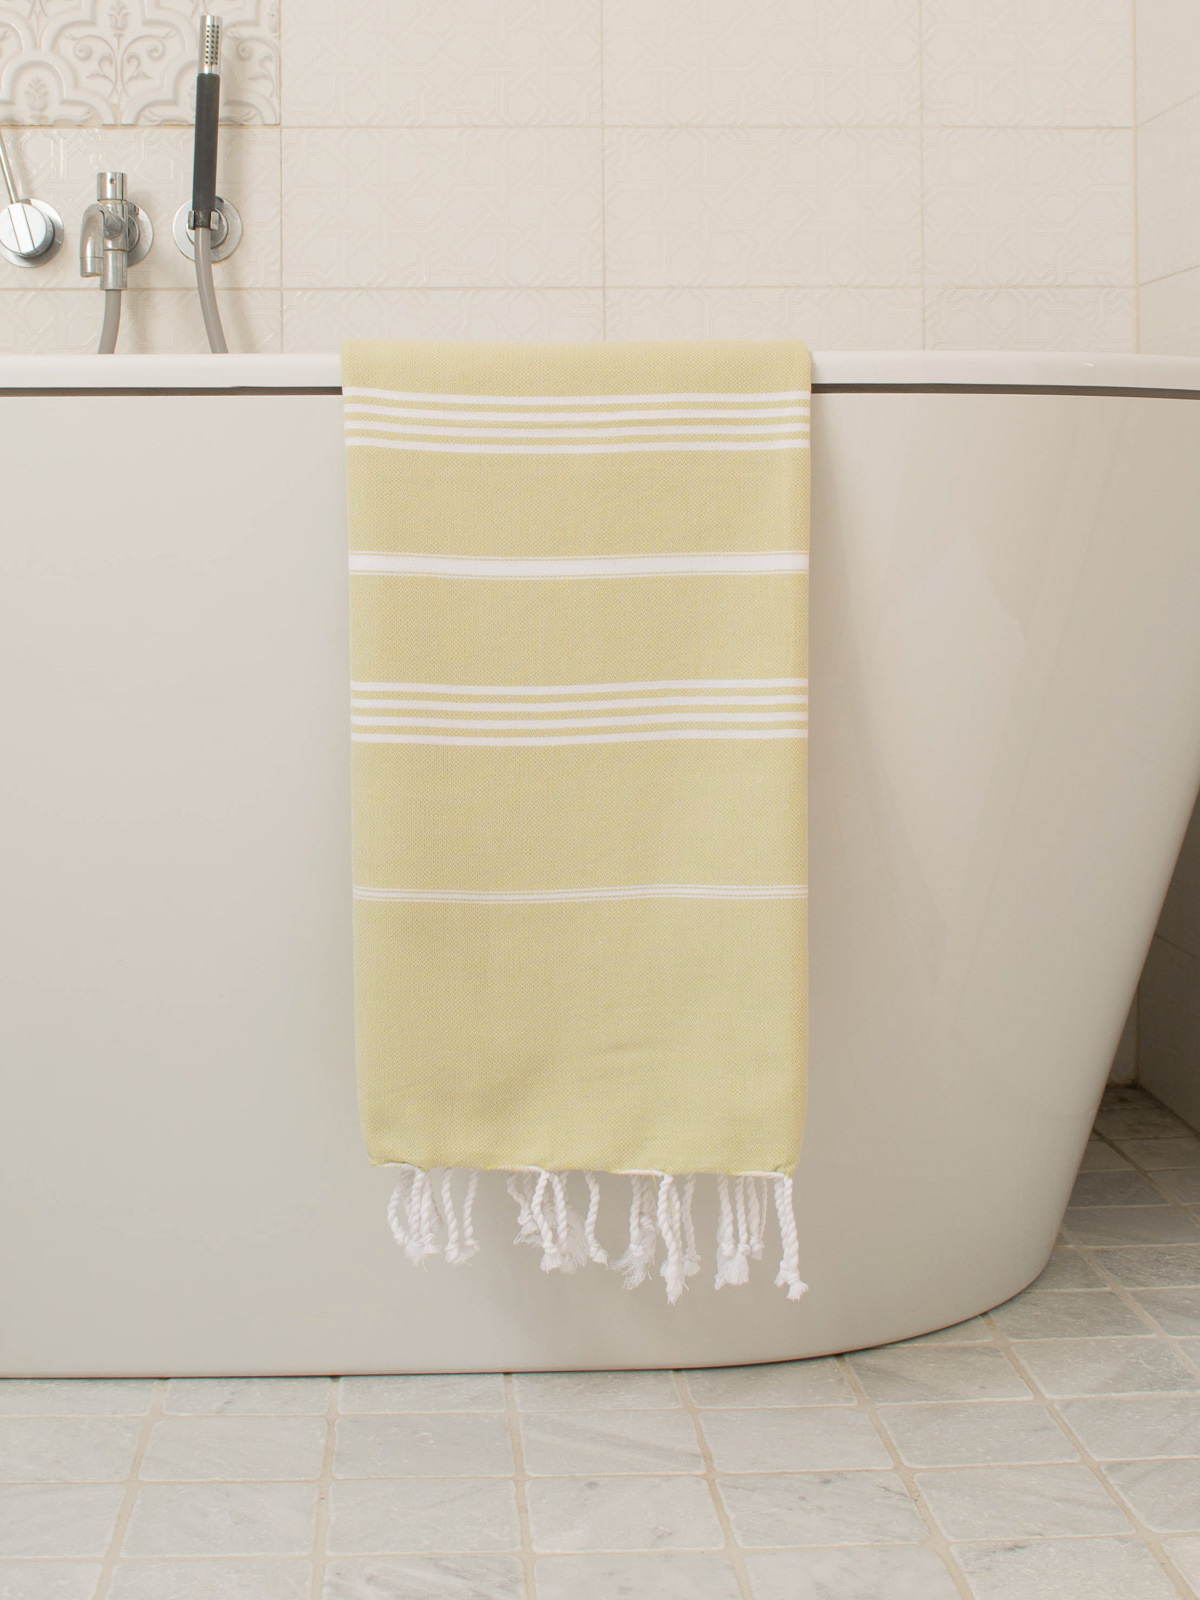 hammam towel linden/white